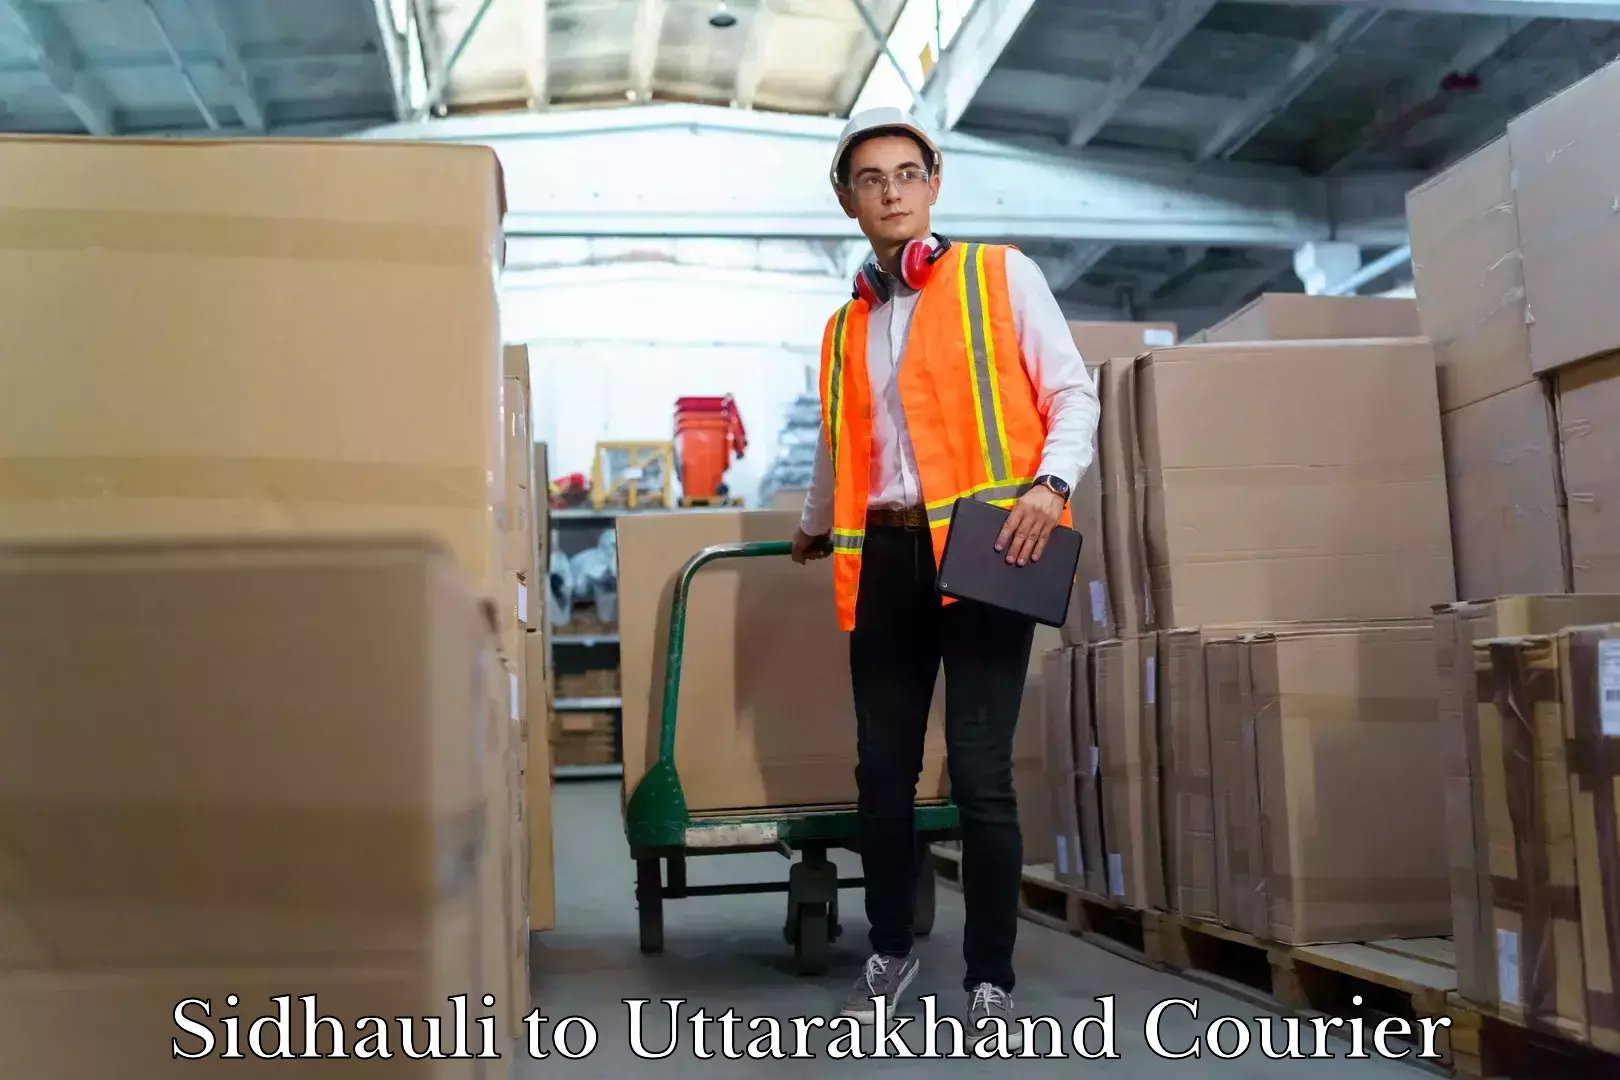 Professional moving assistance Sidhauli to Uttarakhand